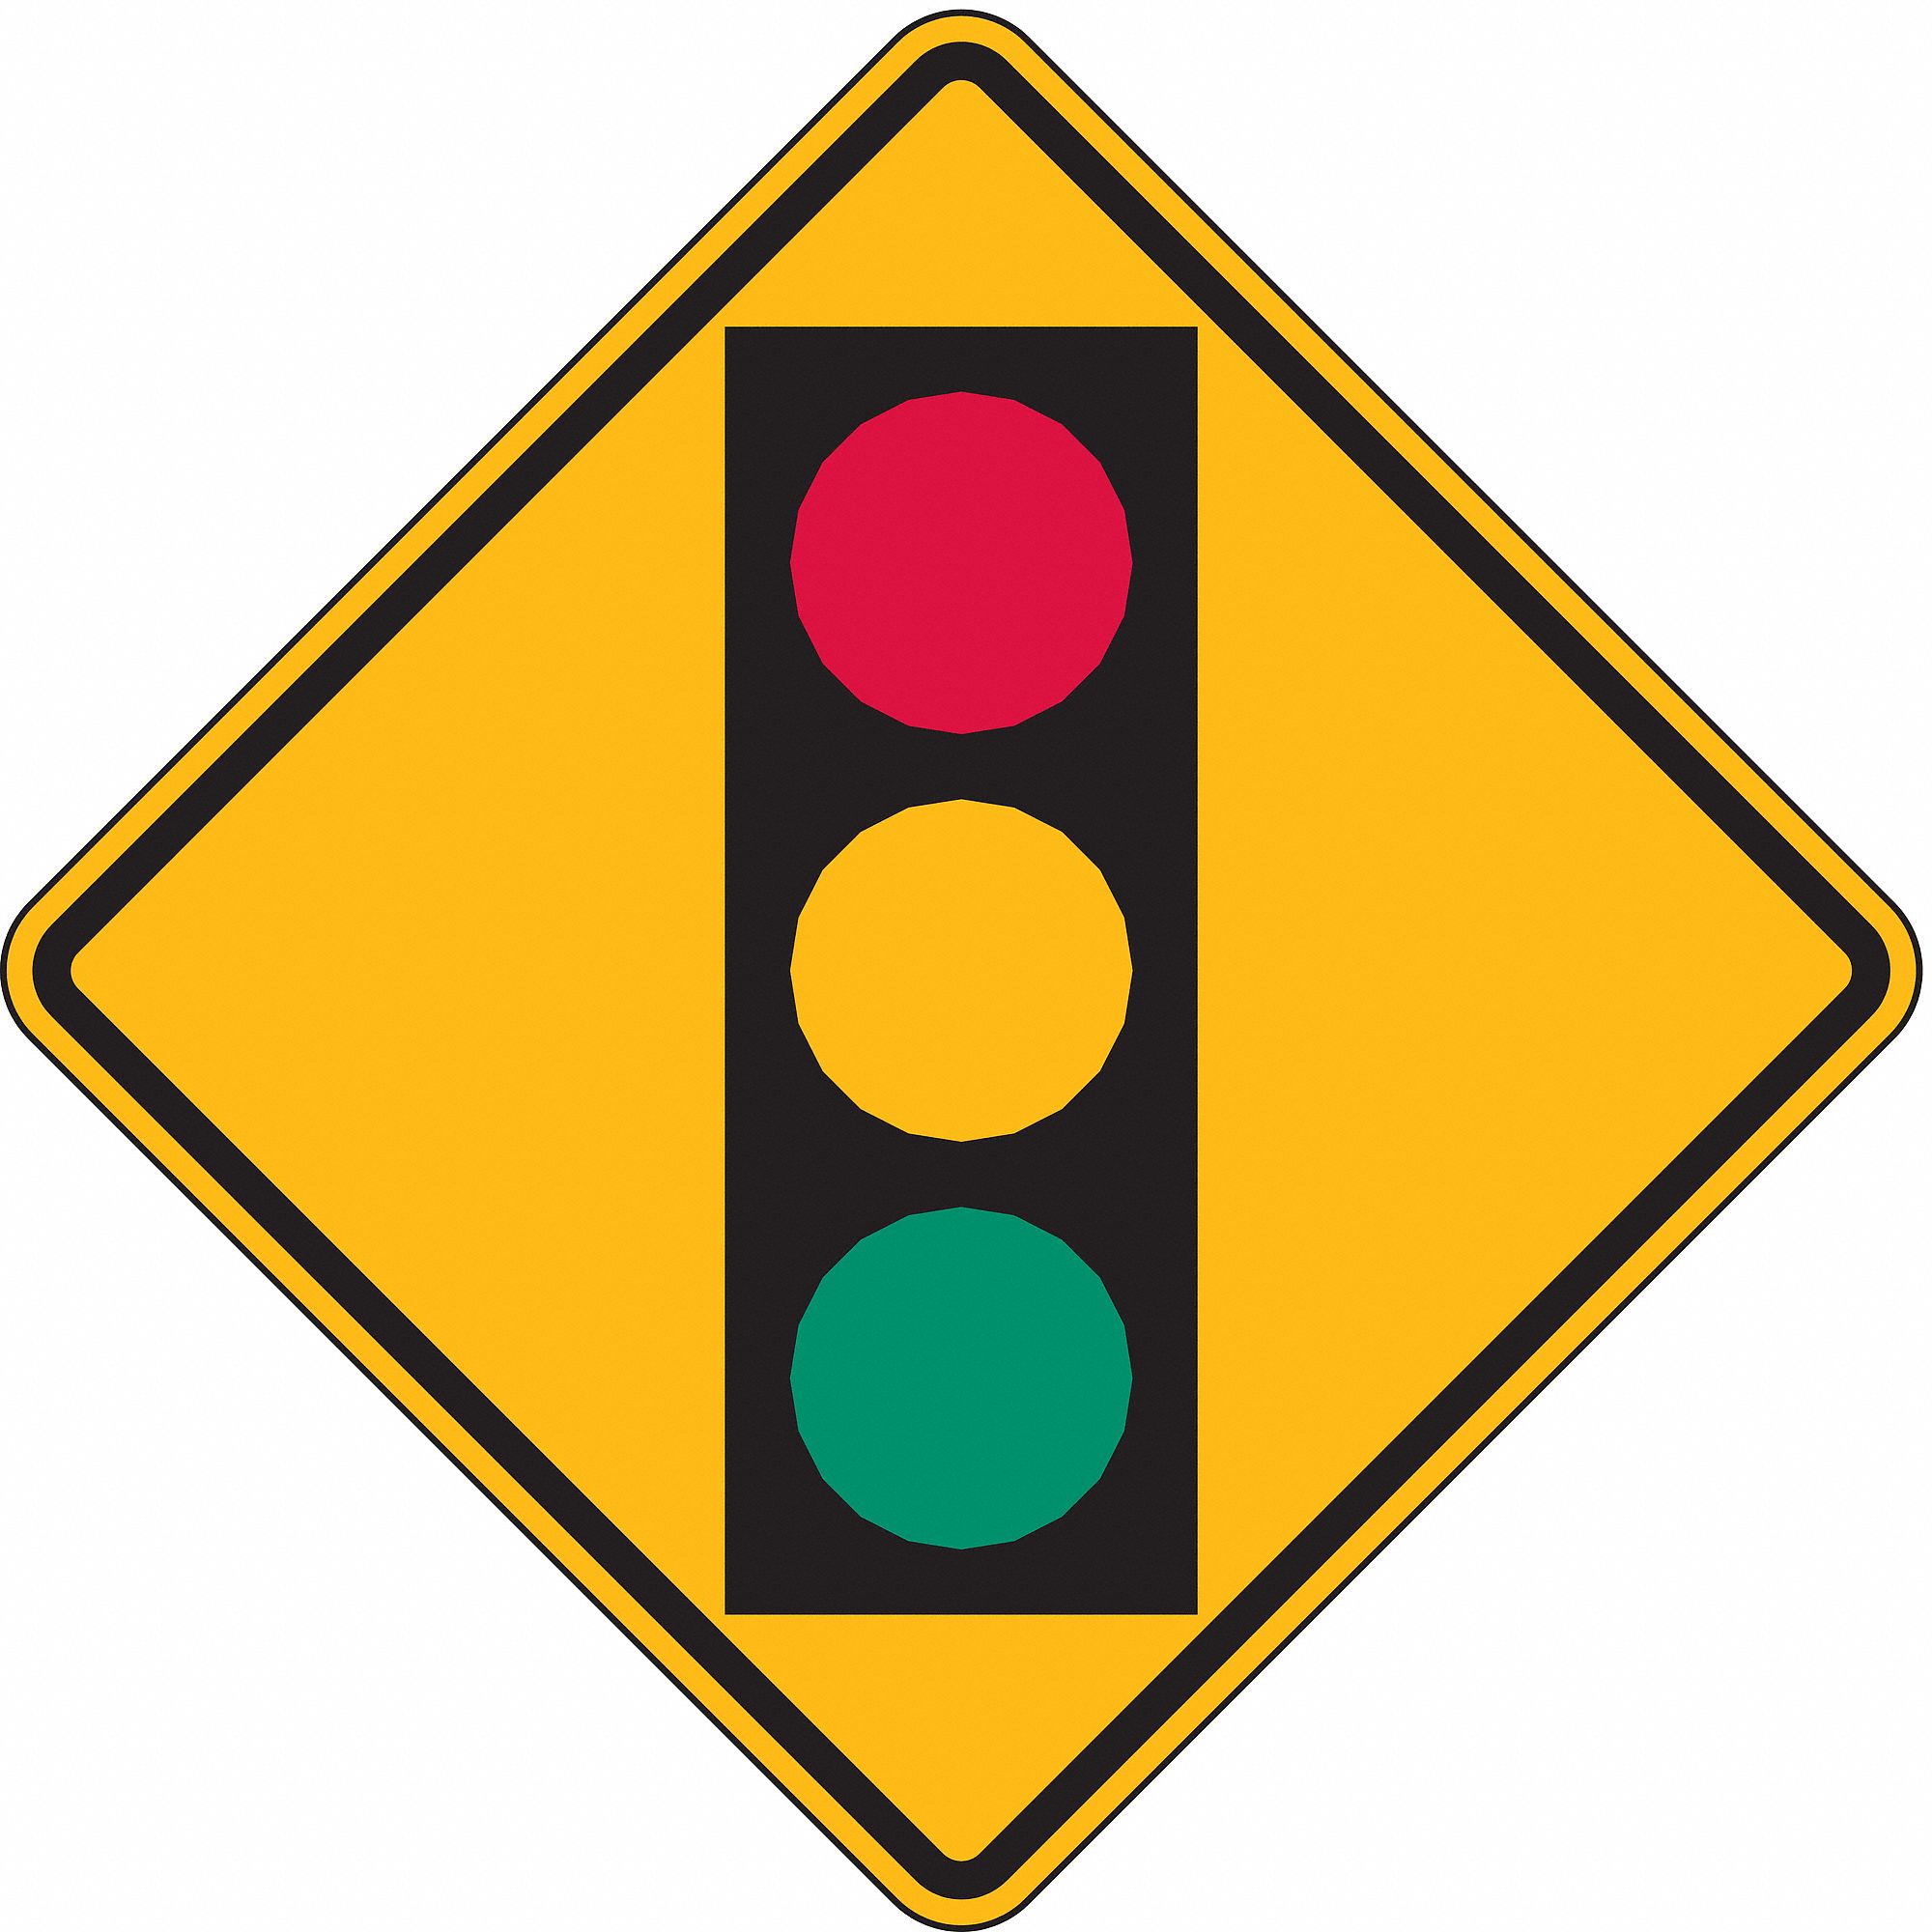 LYLE Stop Light Traffic Sign, MUTCD Code W3-3, 18 in x 18 in - 3PMU7|W3 ...